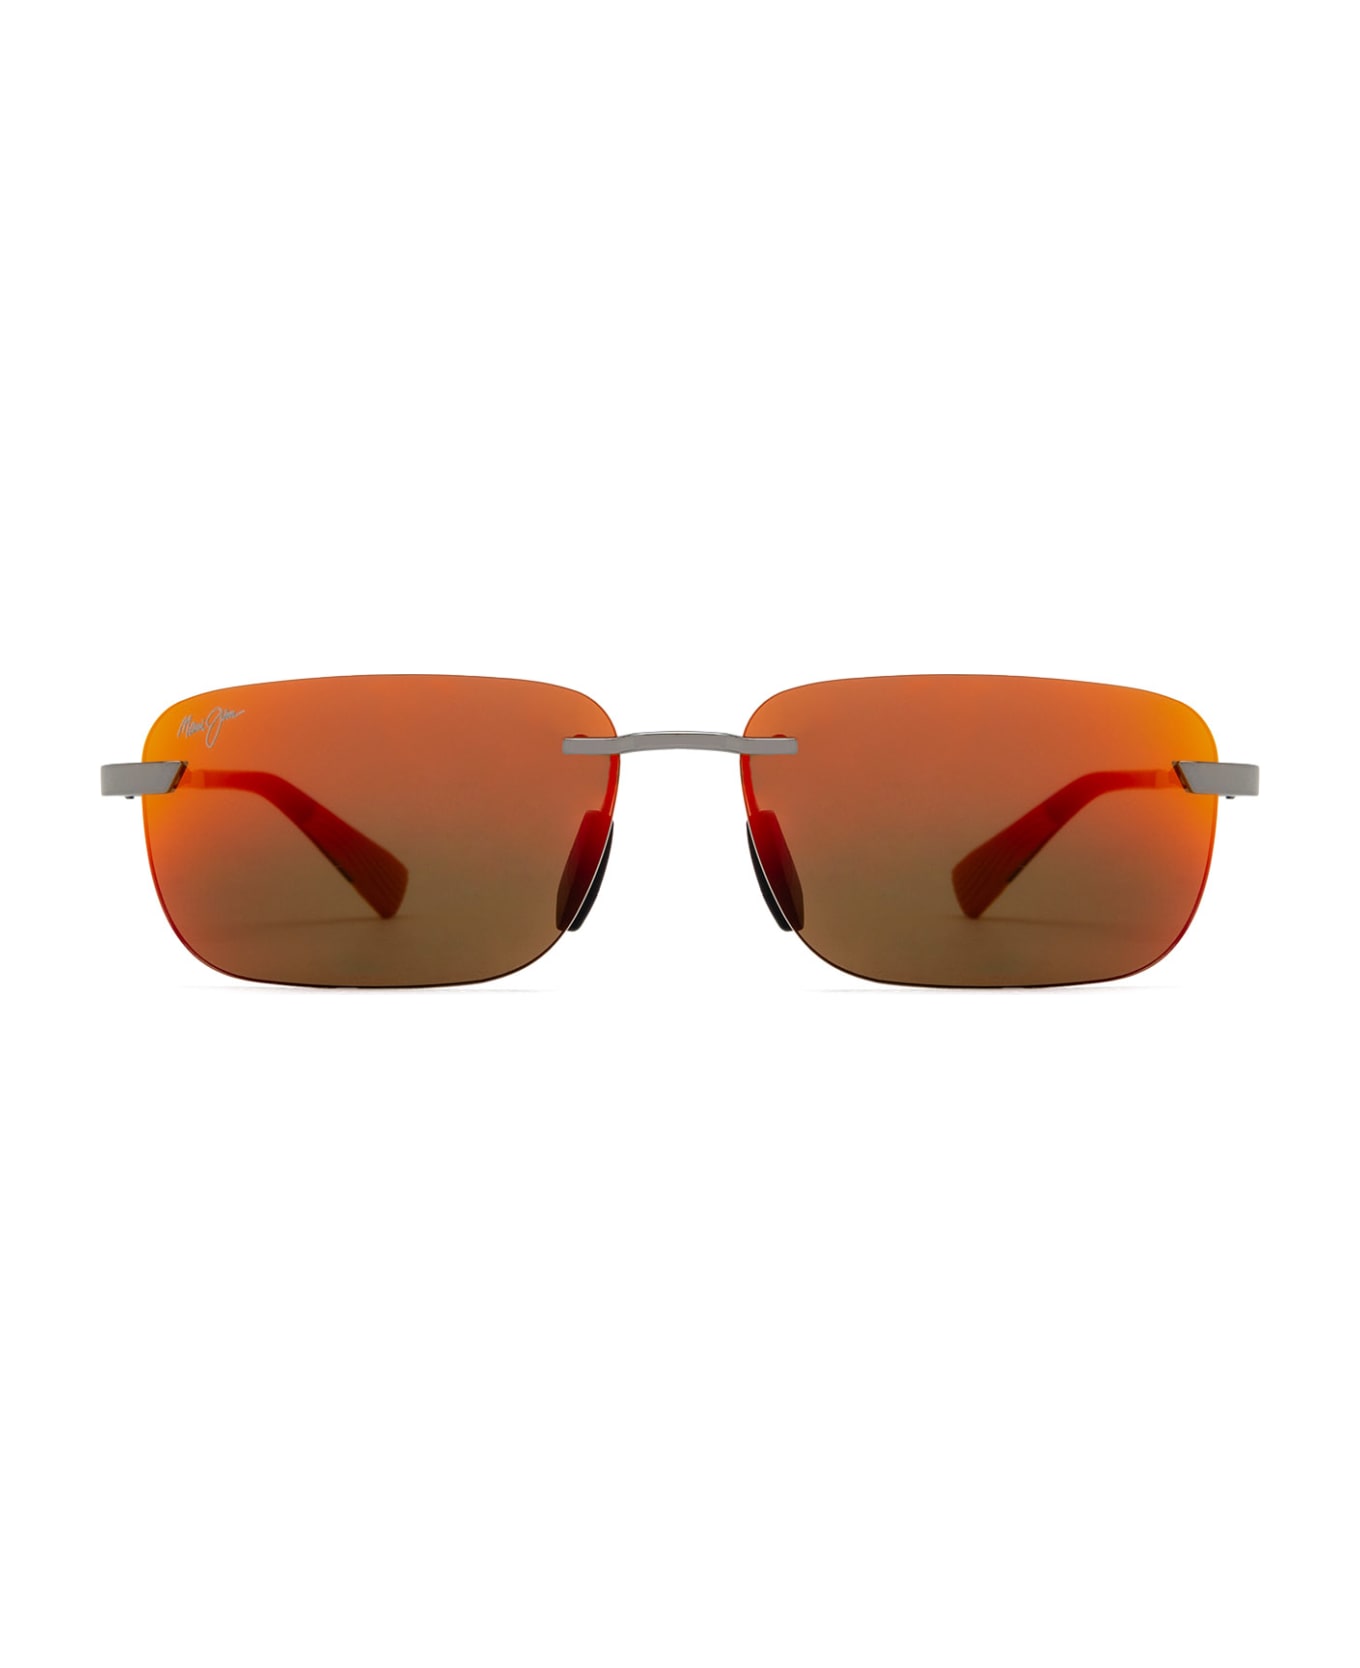 Maui Jim Mj624 Shiny Light Ruthenium Sunglasses - Shiny Light Ruthenium サングラス